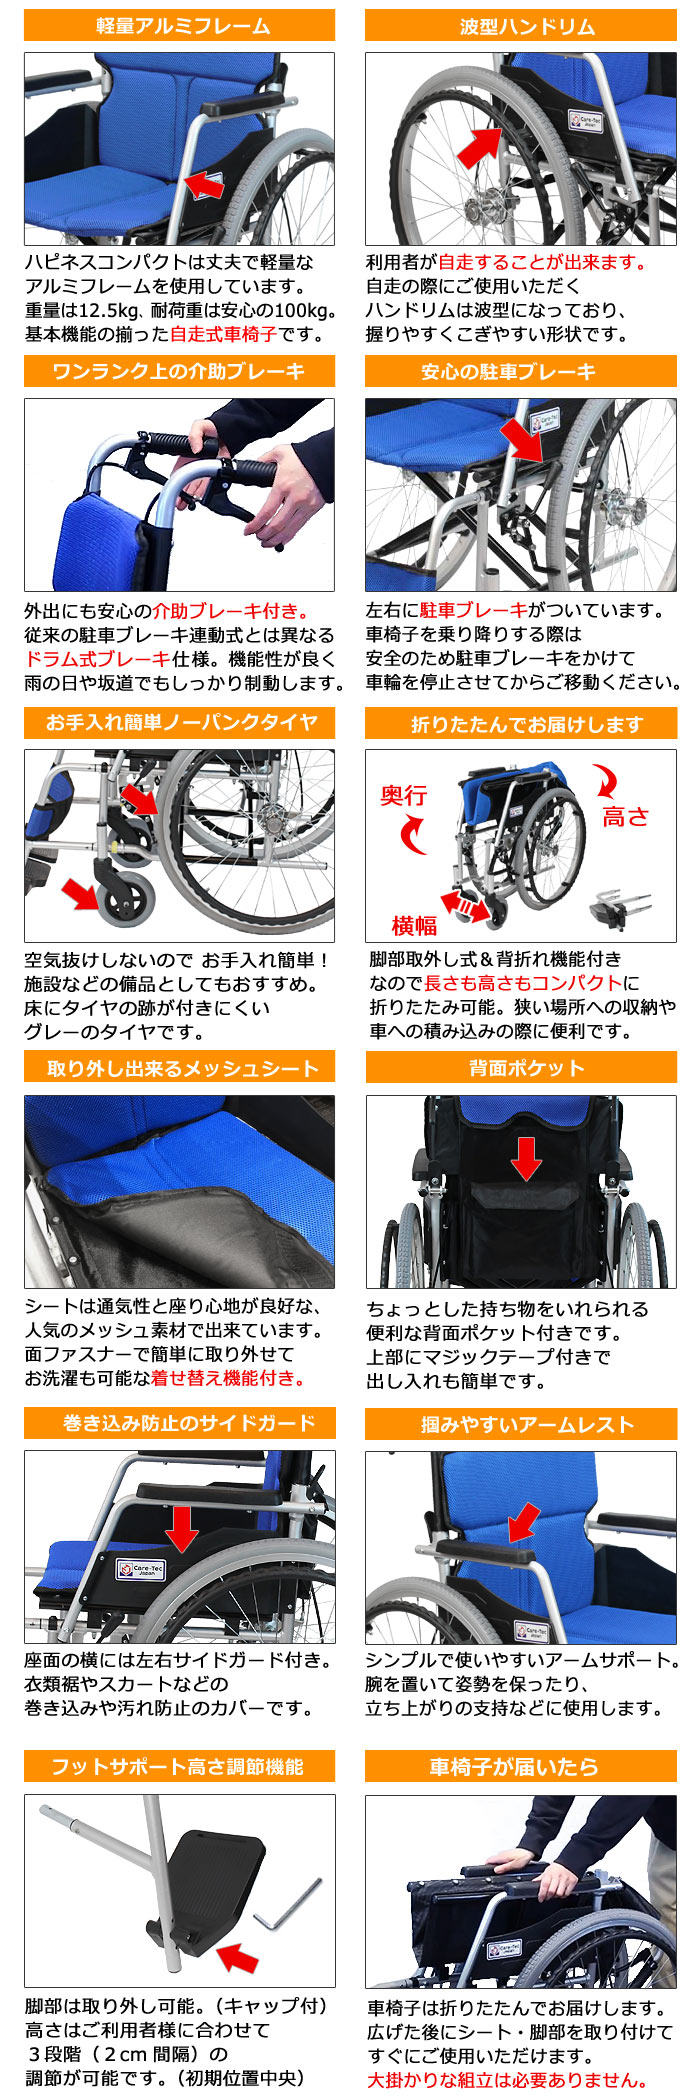 【ケアテックジャパン】 自走式車椅子 ハピネスコンパクト CA-10SUC の主な機能